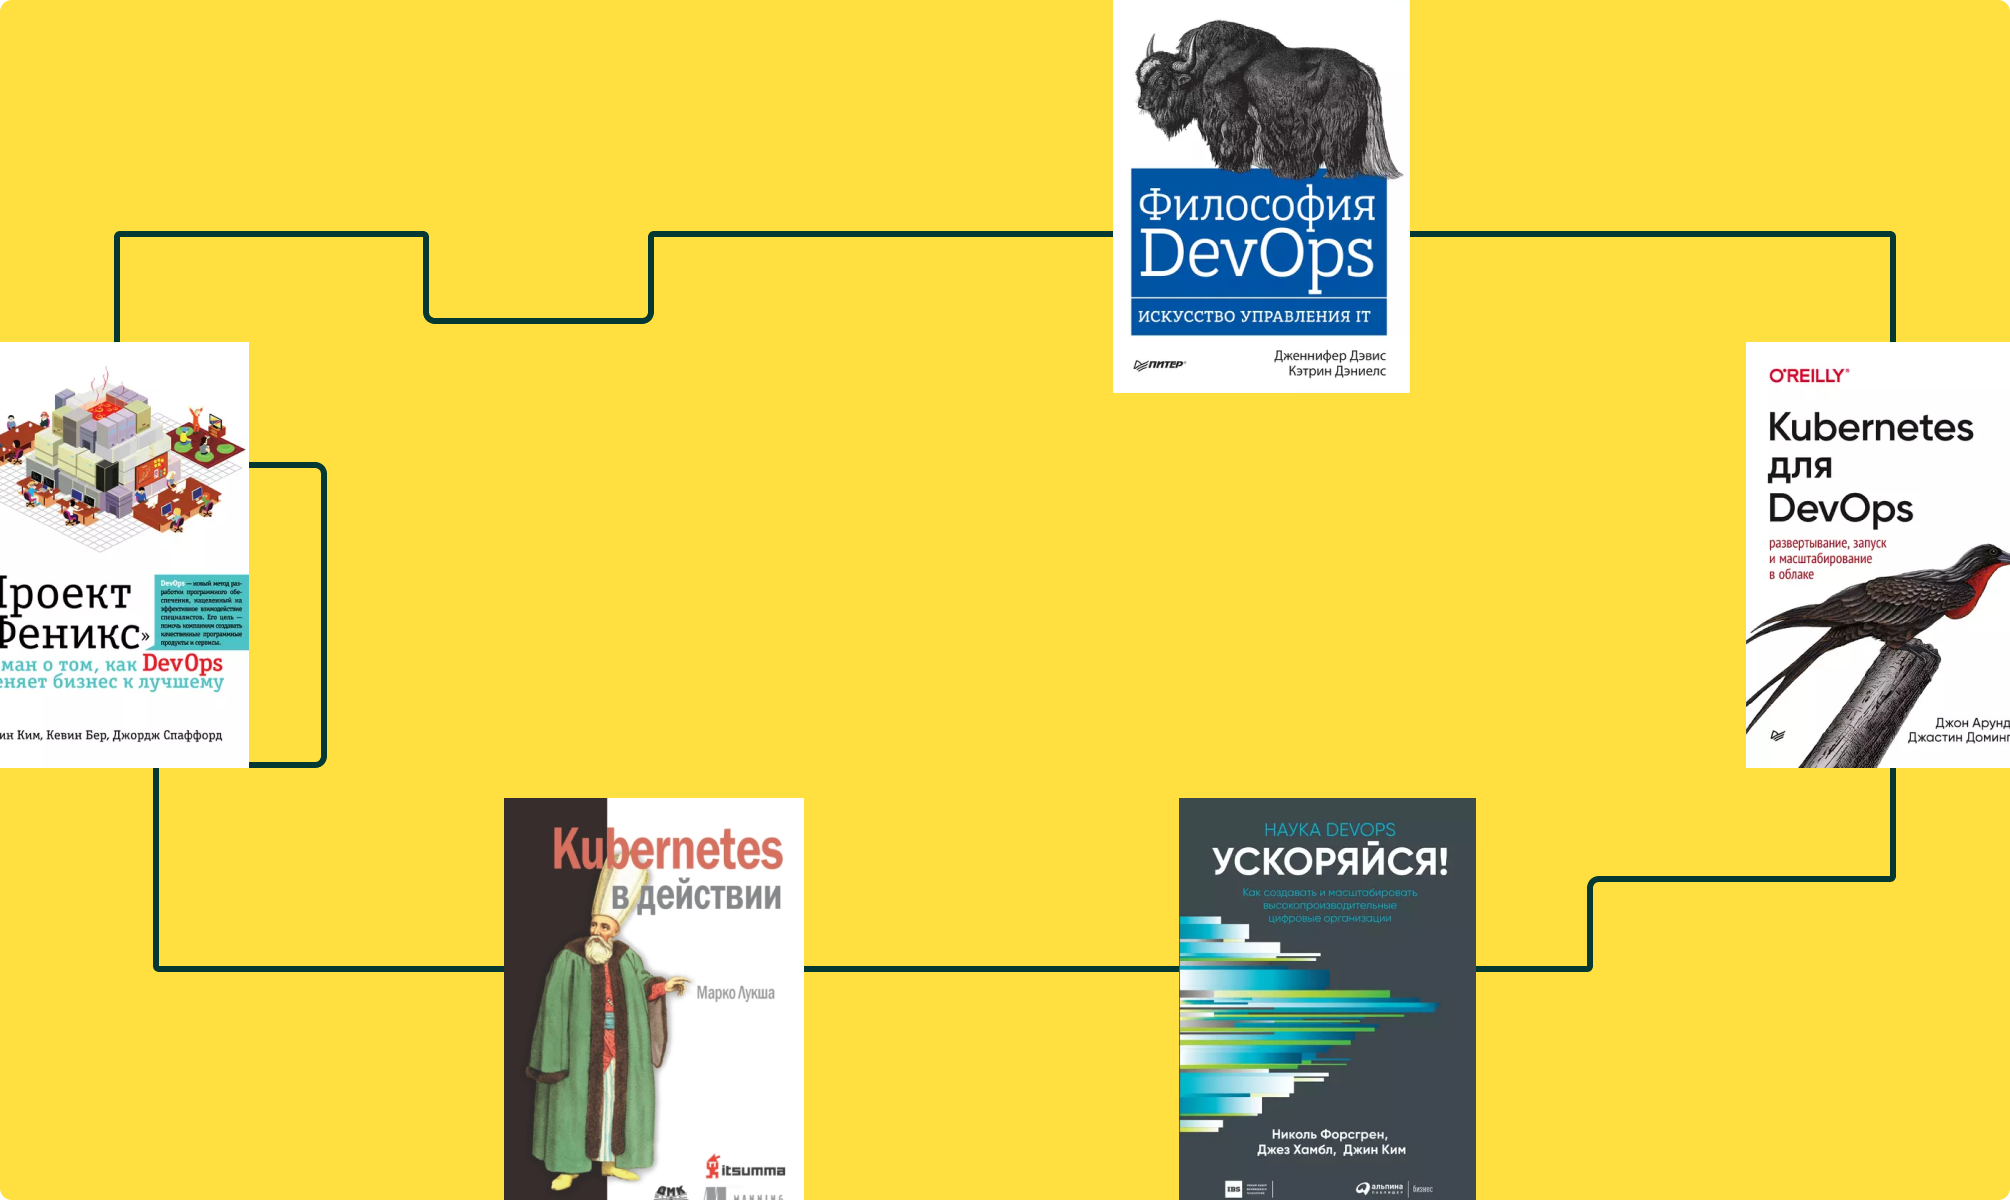 Какие книги нужно прочитать каждому DevOps-инженеру?